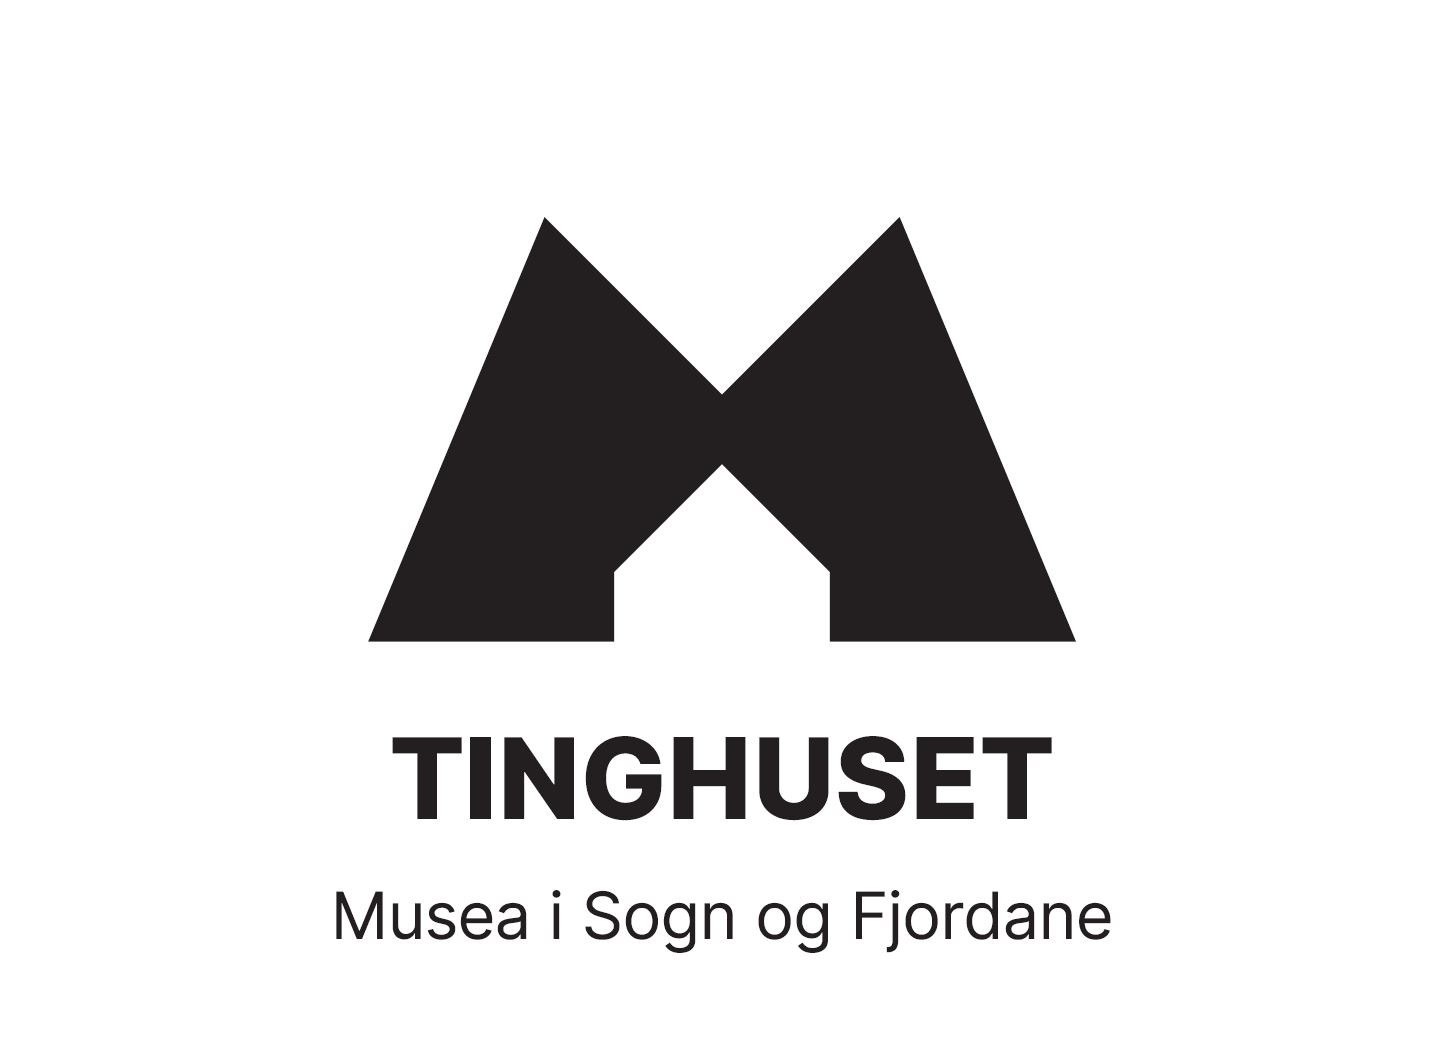 Logo er ein stor M over teksten Tinghuset Musea i Sogn og Fjordane.